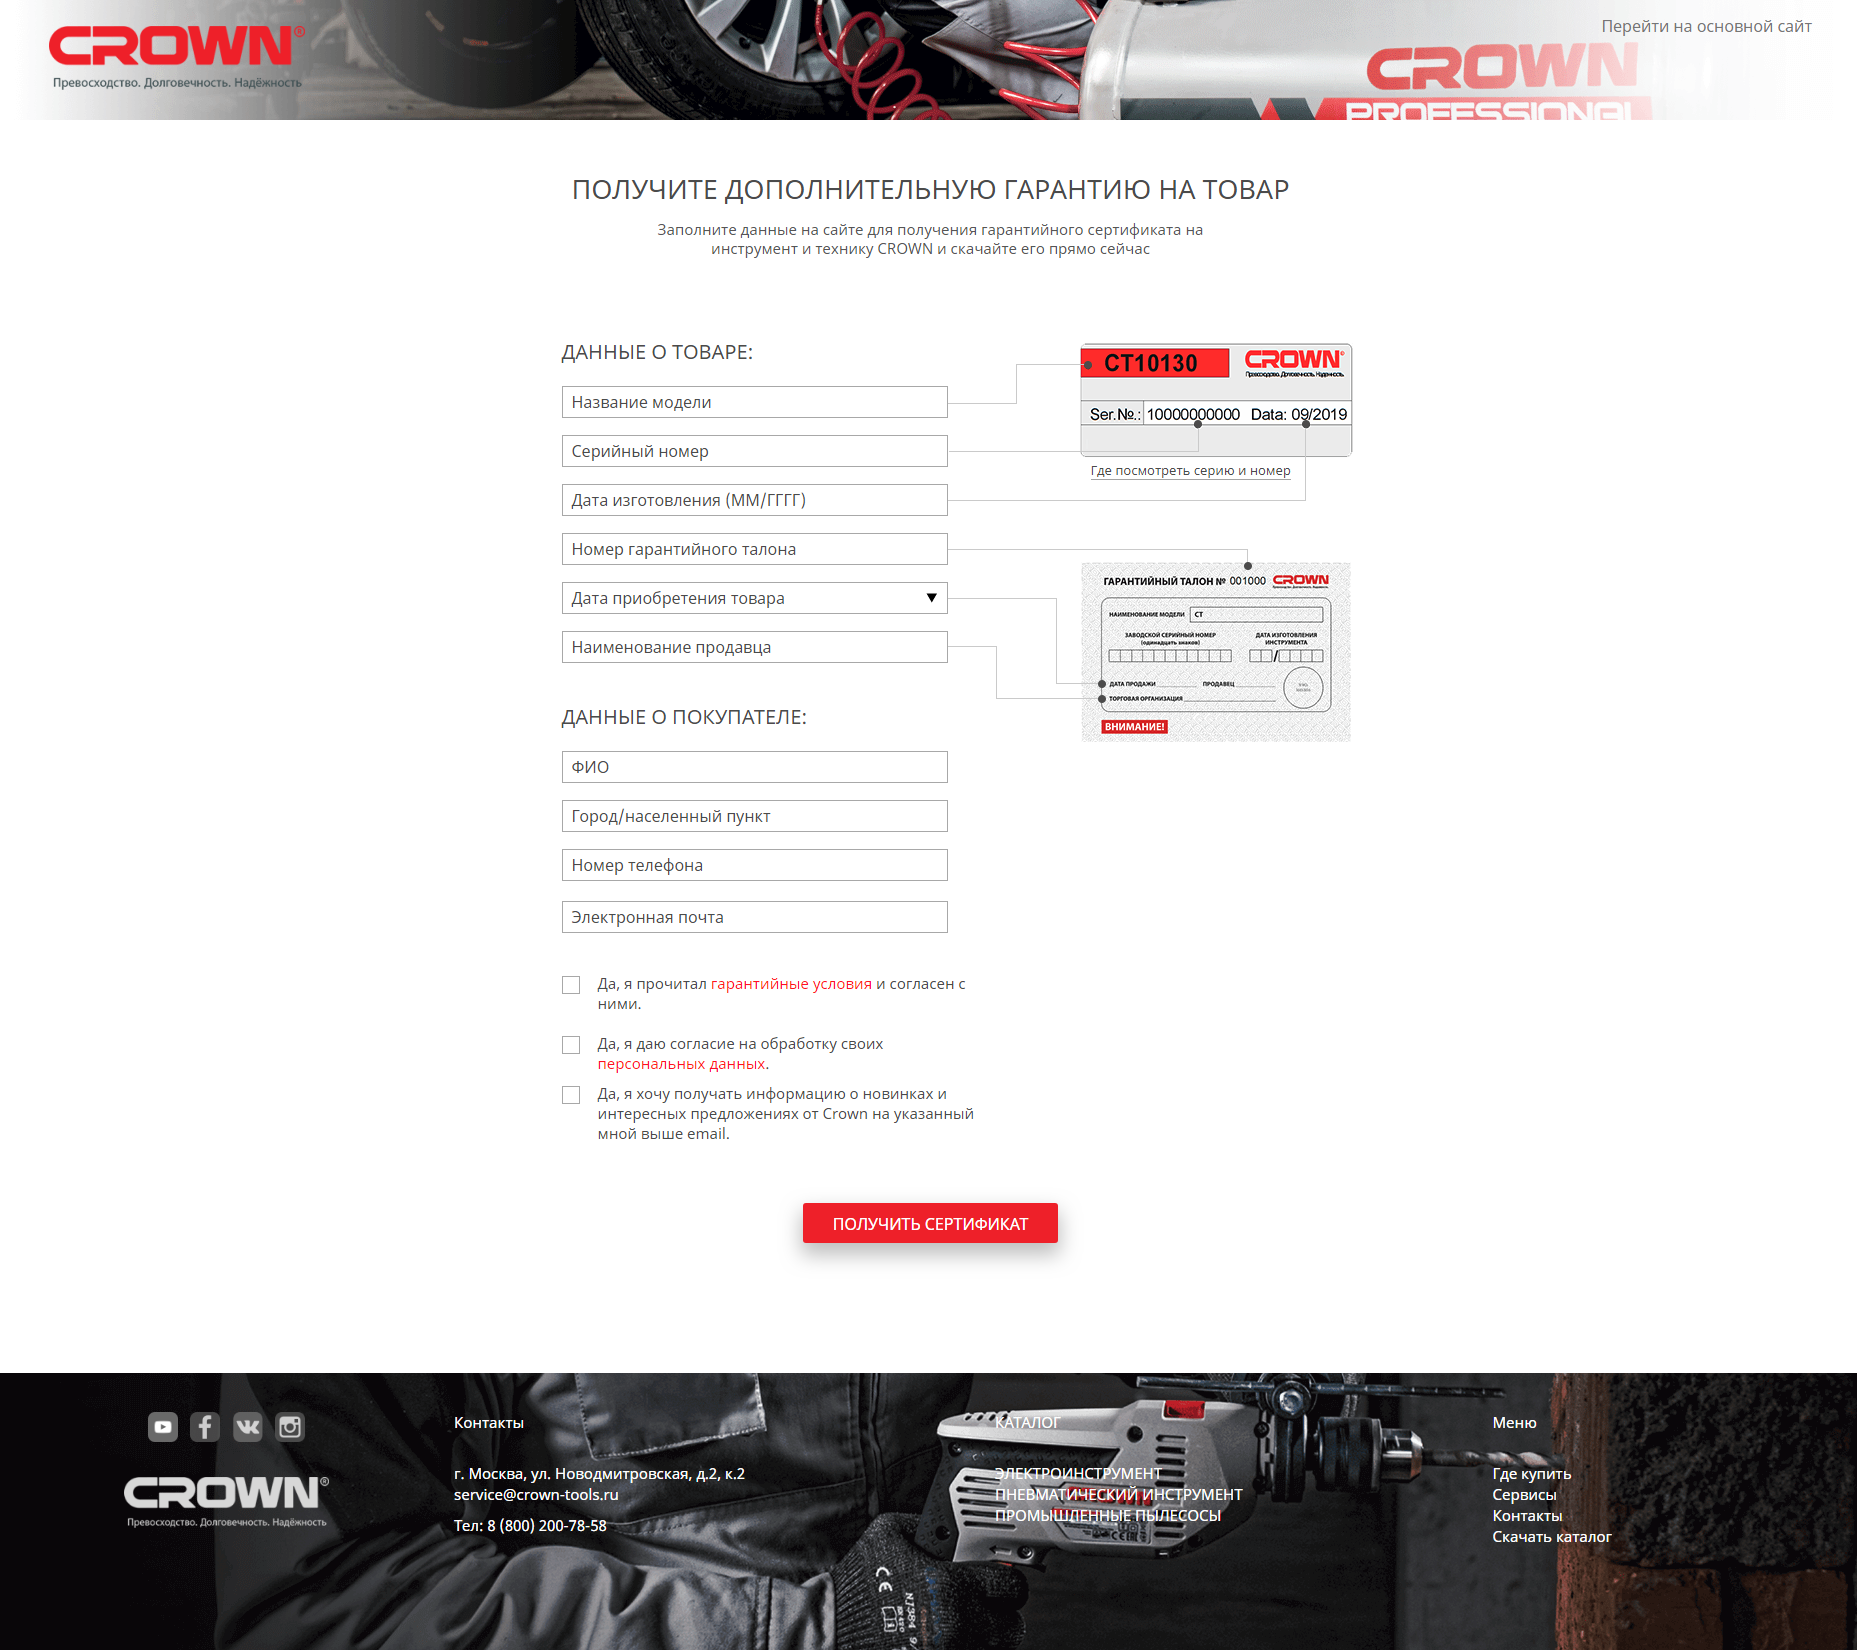 сайт сервисного центра crown